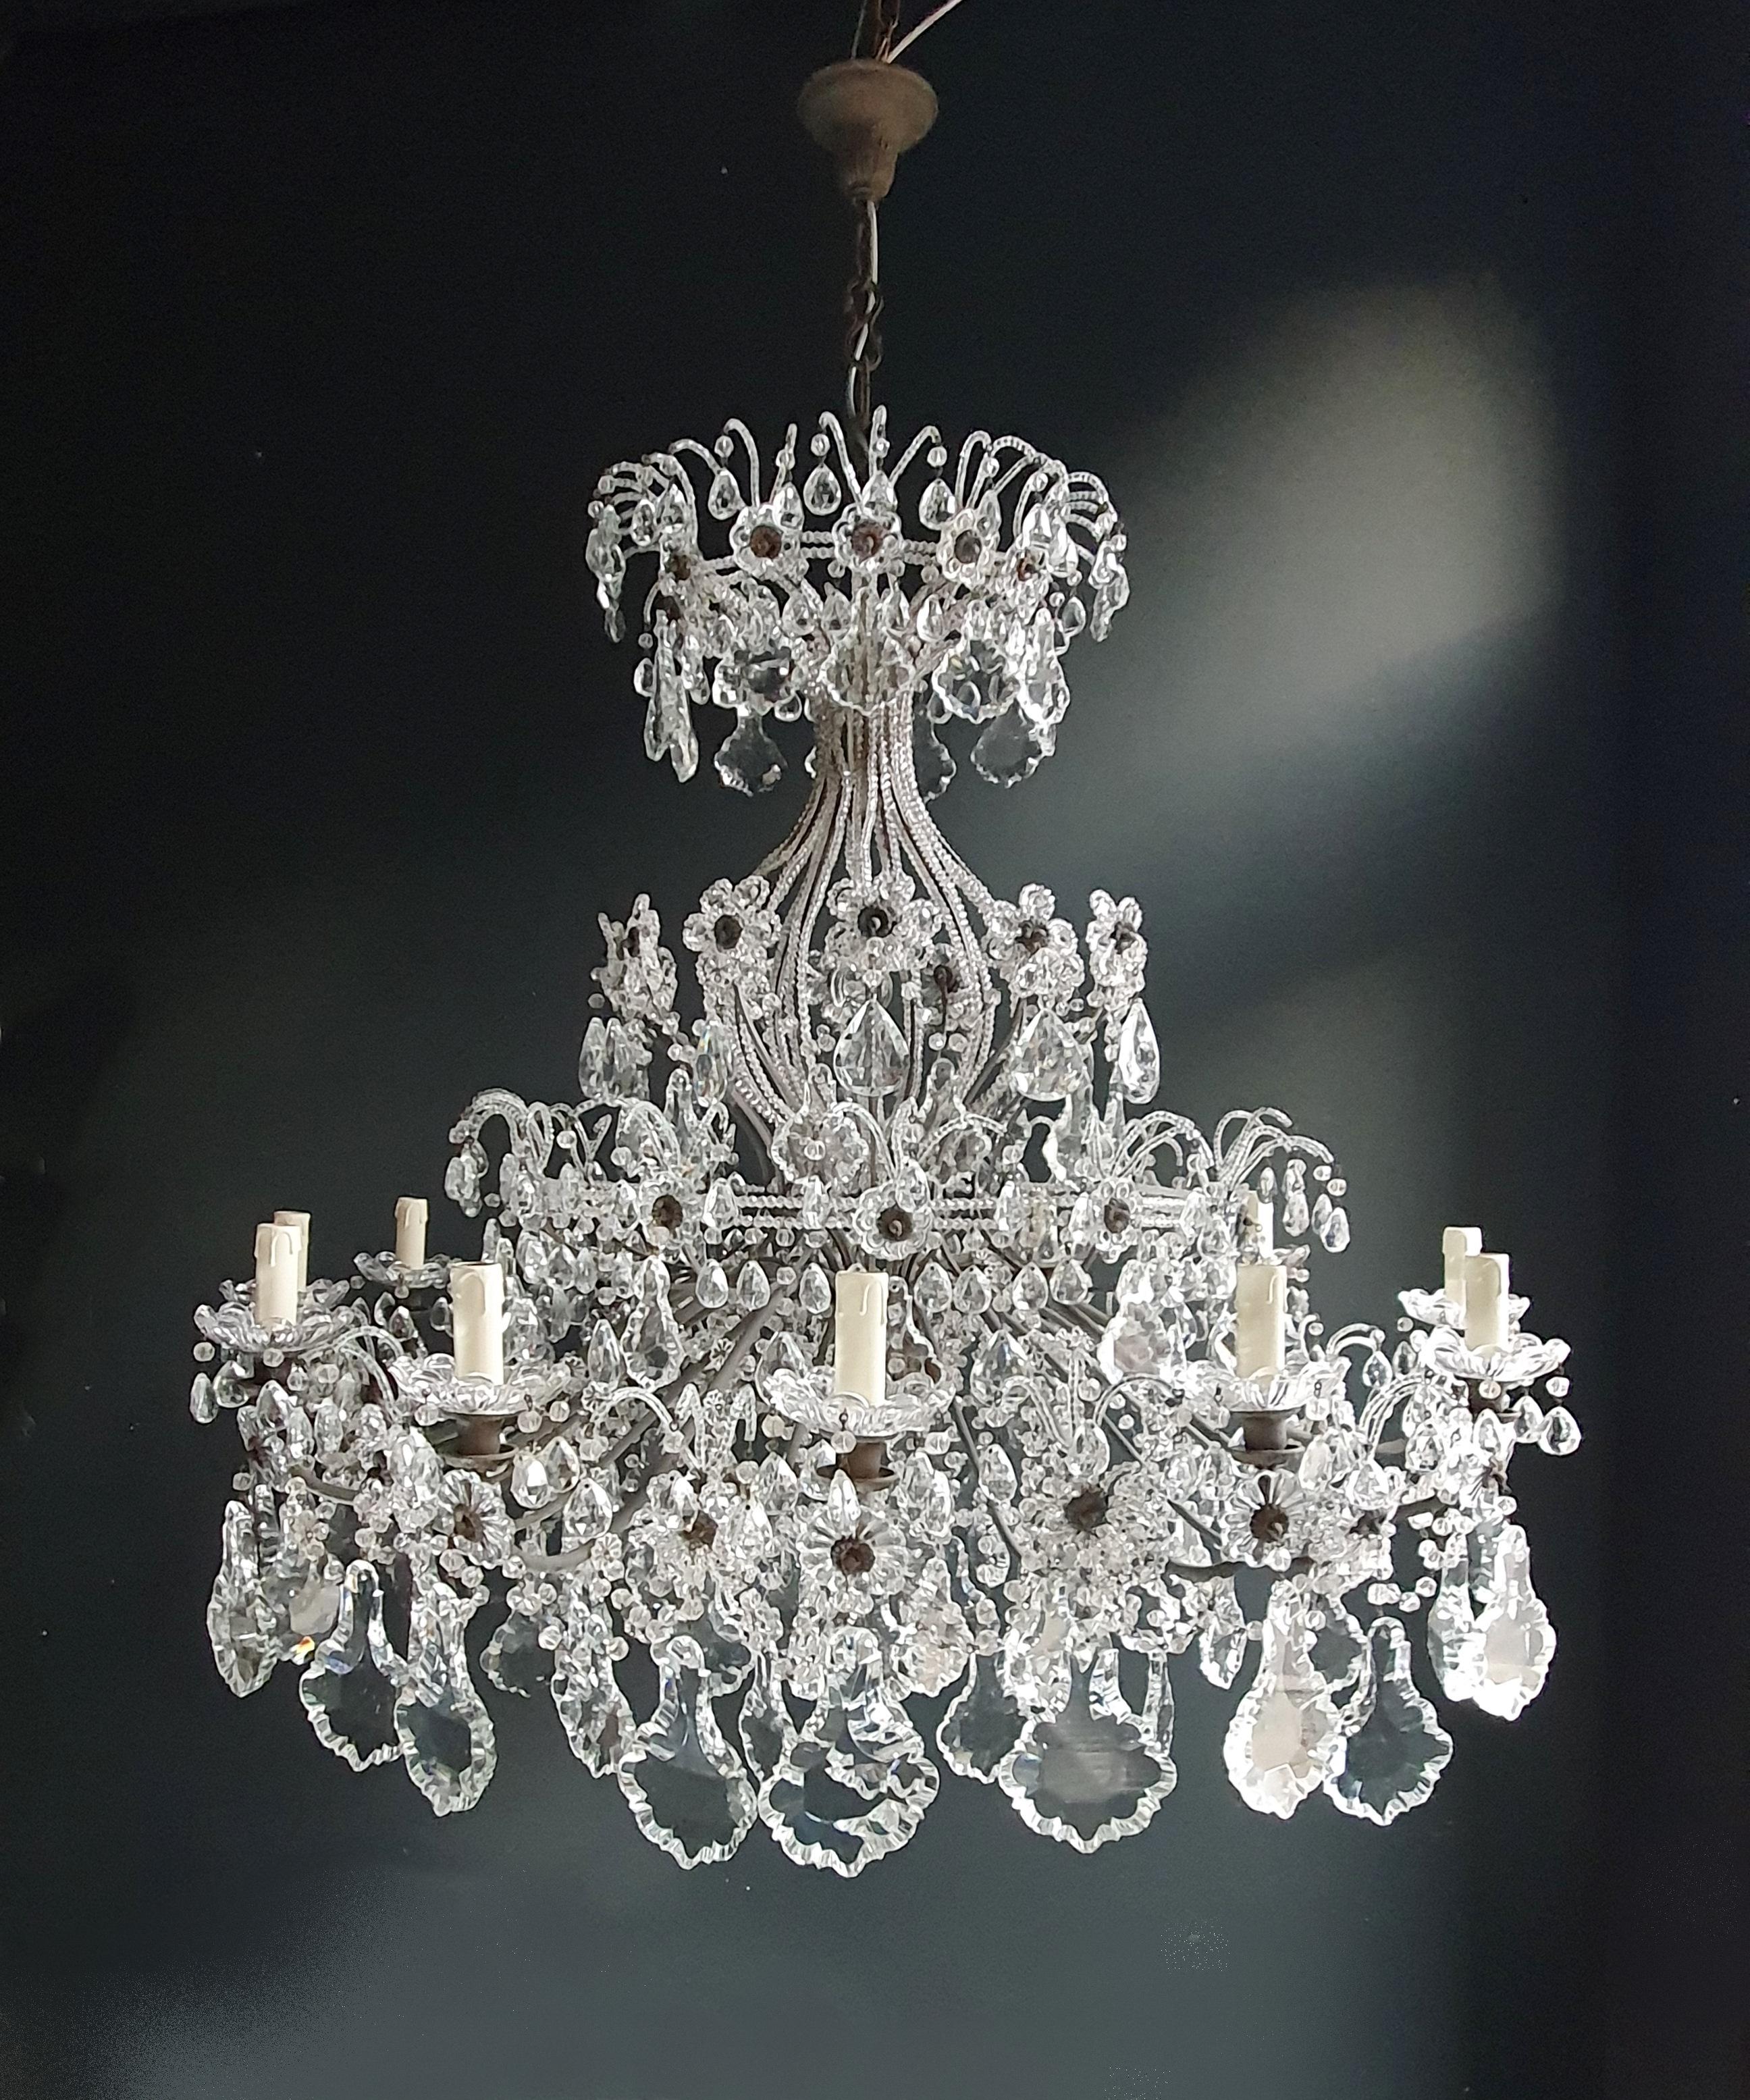 Huge Candelabrum Crystal Antique Chandelier Ceiling Lustre Art Nouveau 1